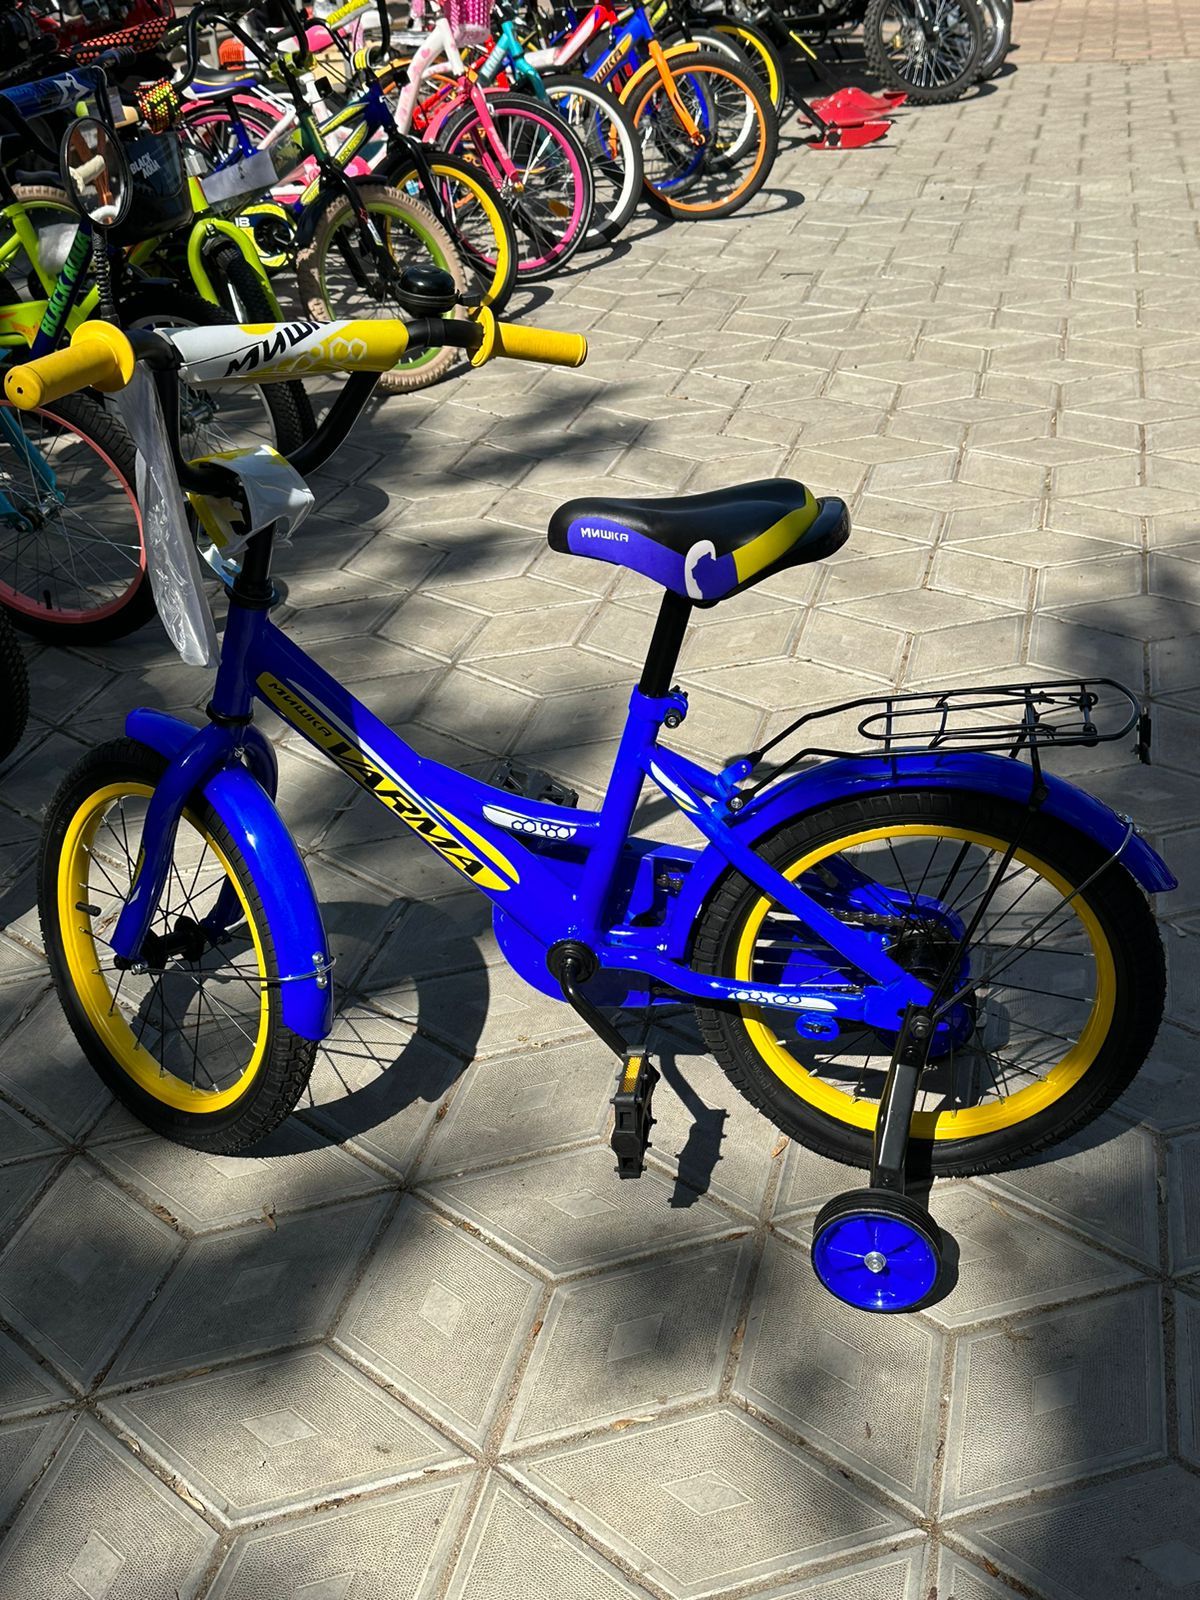 Новые поступления велосипедов в ТД "Партнер"